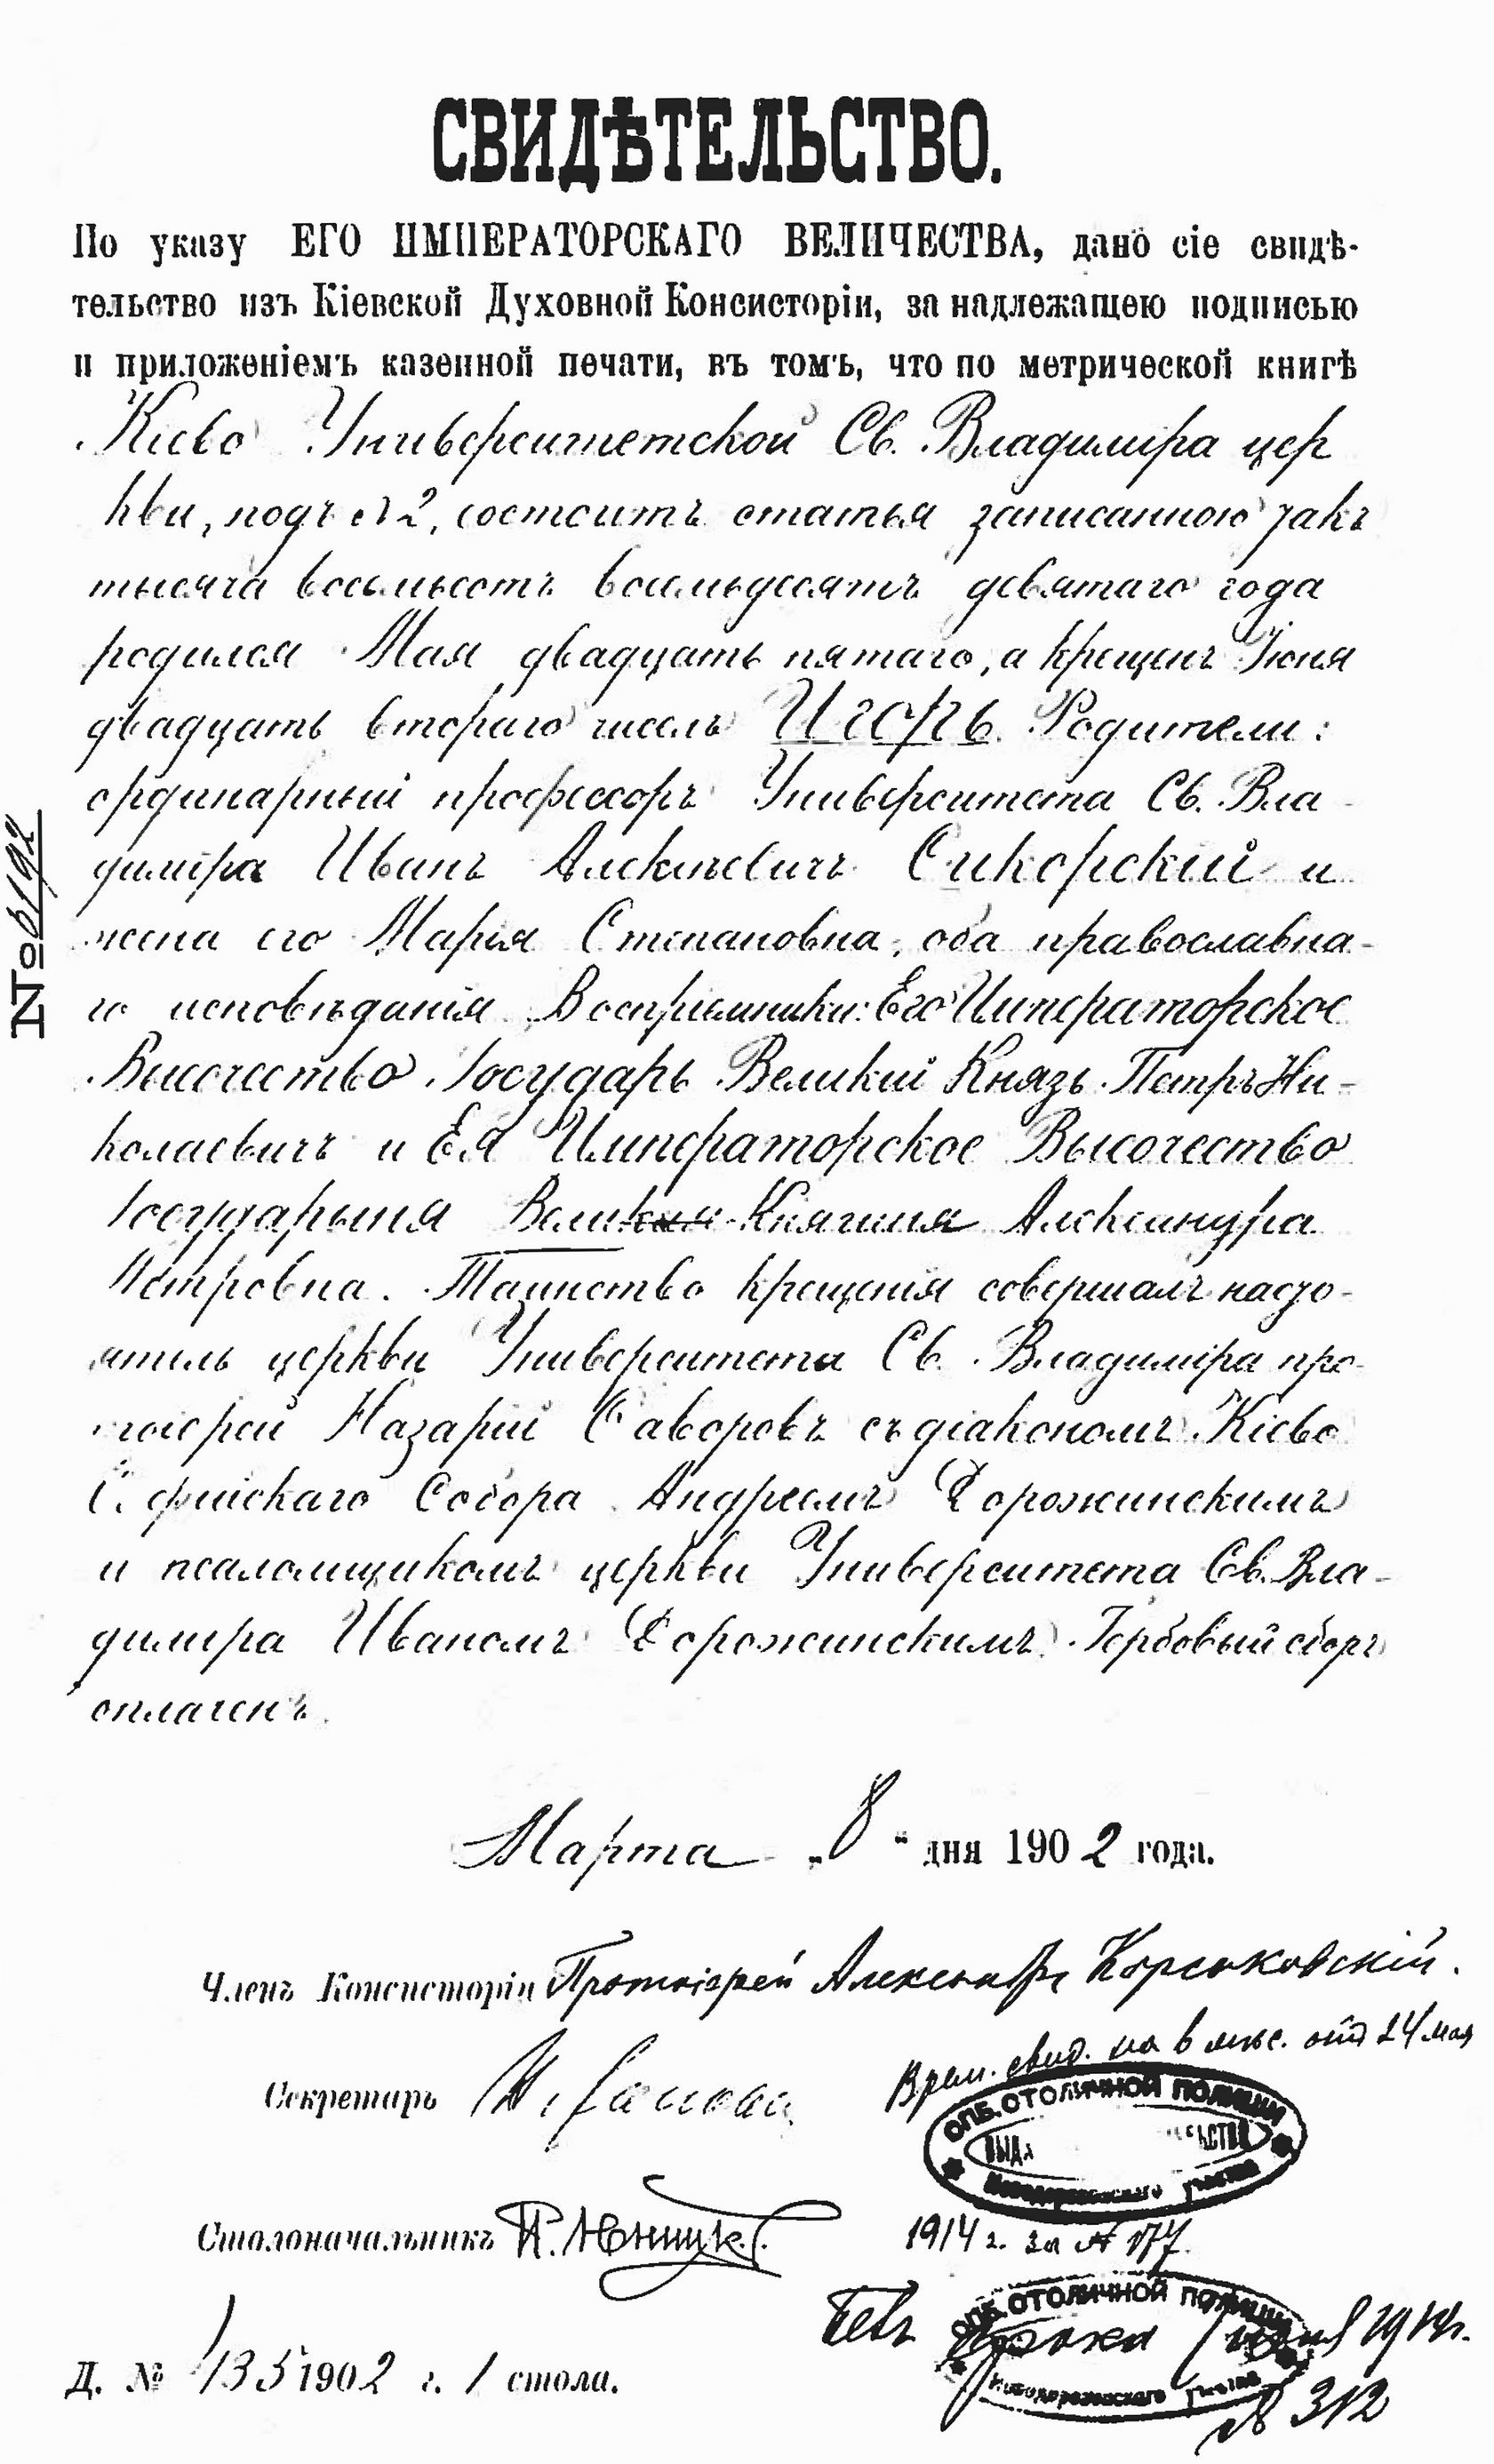 Свідоцтво про хрещення Ігоря Сікорського, видане Київською духовною консисторією 8 березня 1902 року